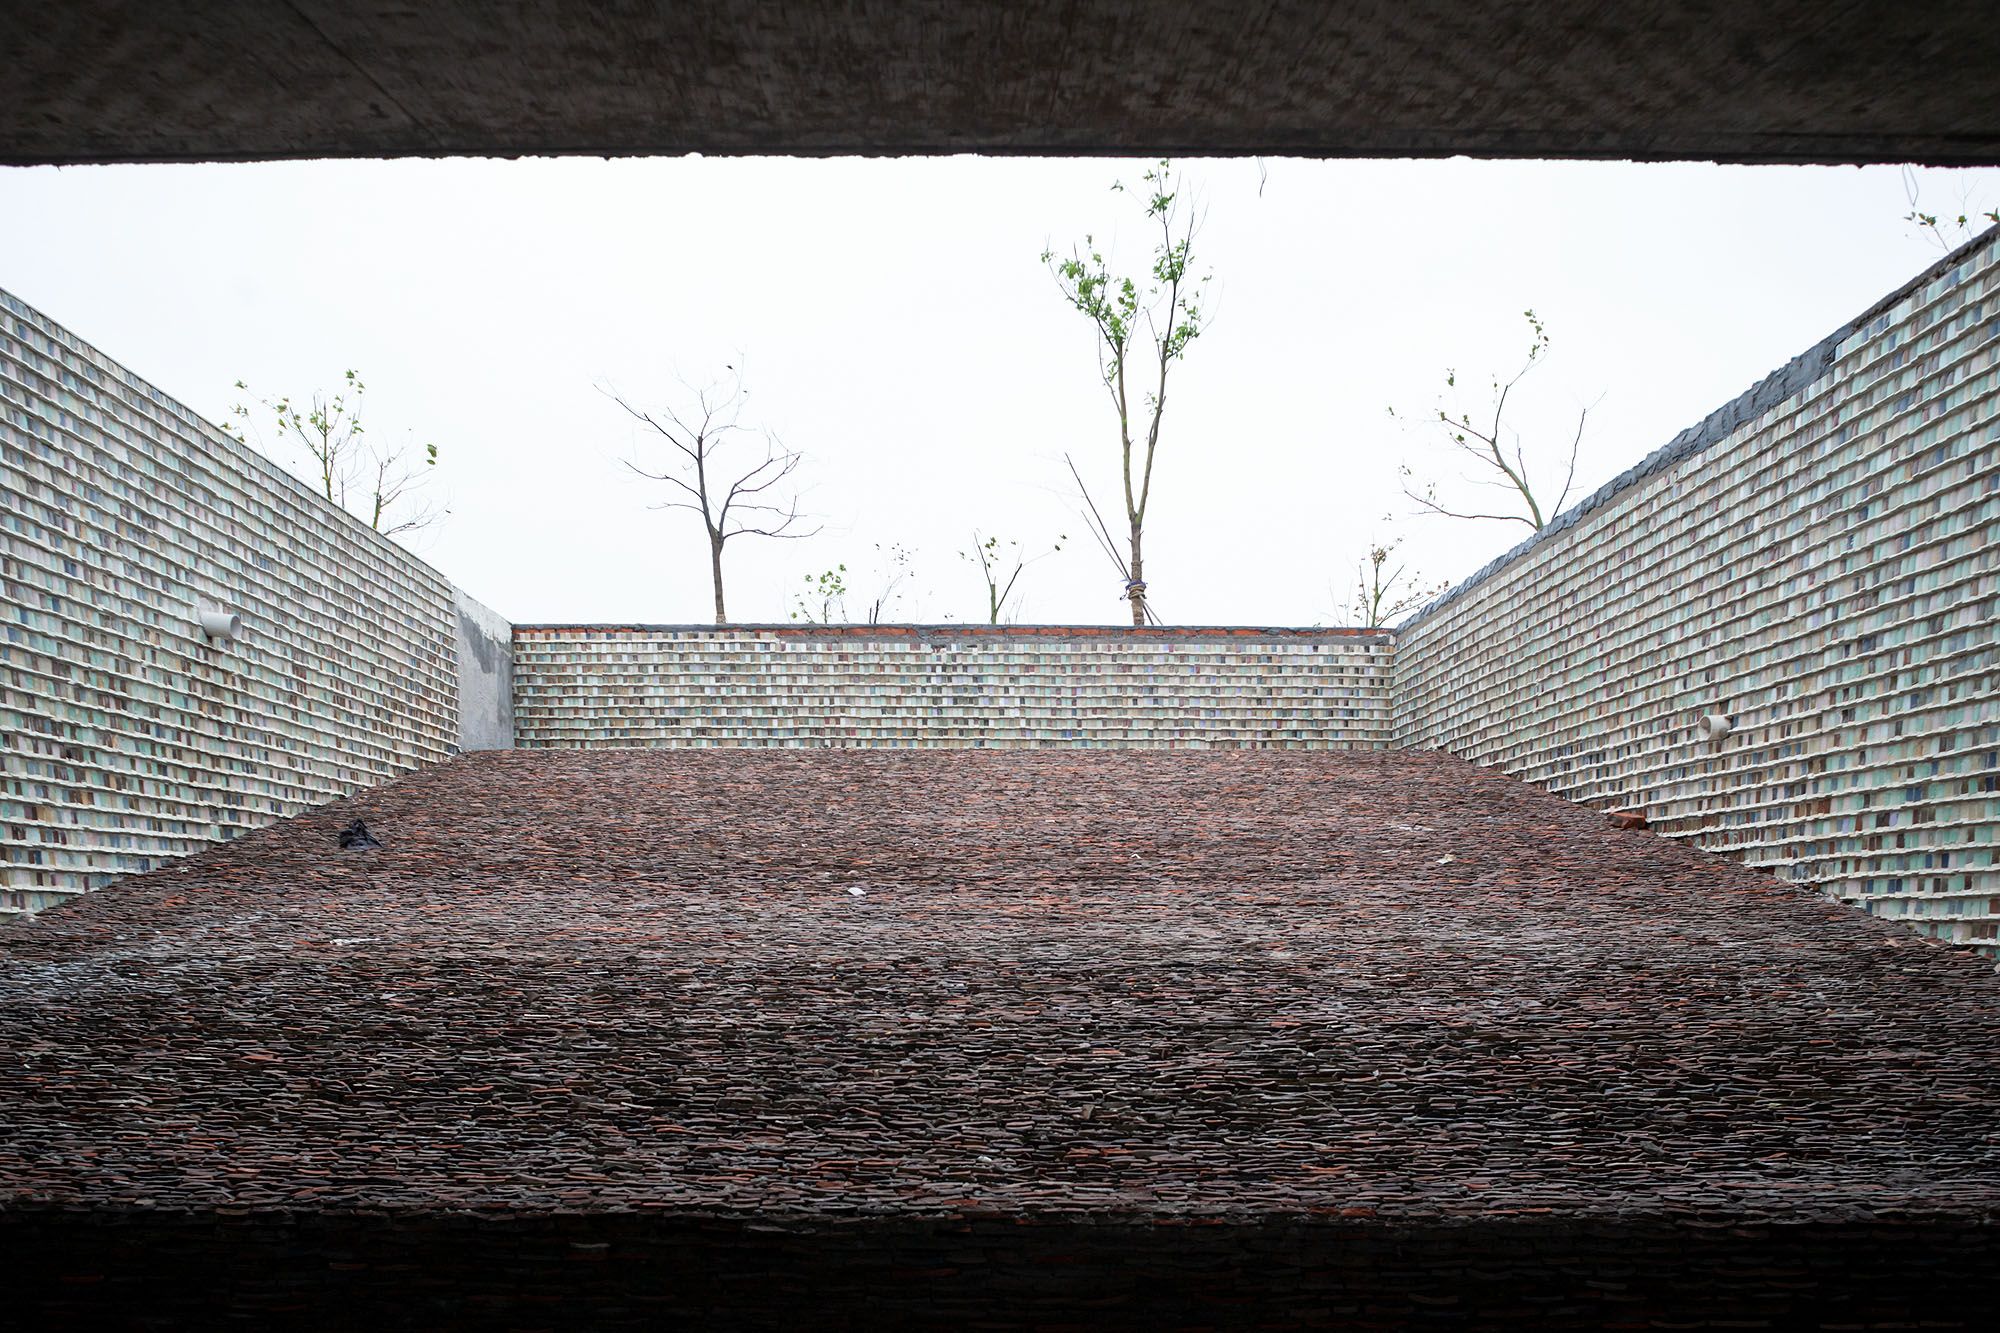 Pavilion, Jinhua Architecture Park, China – Wang Shu